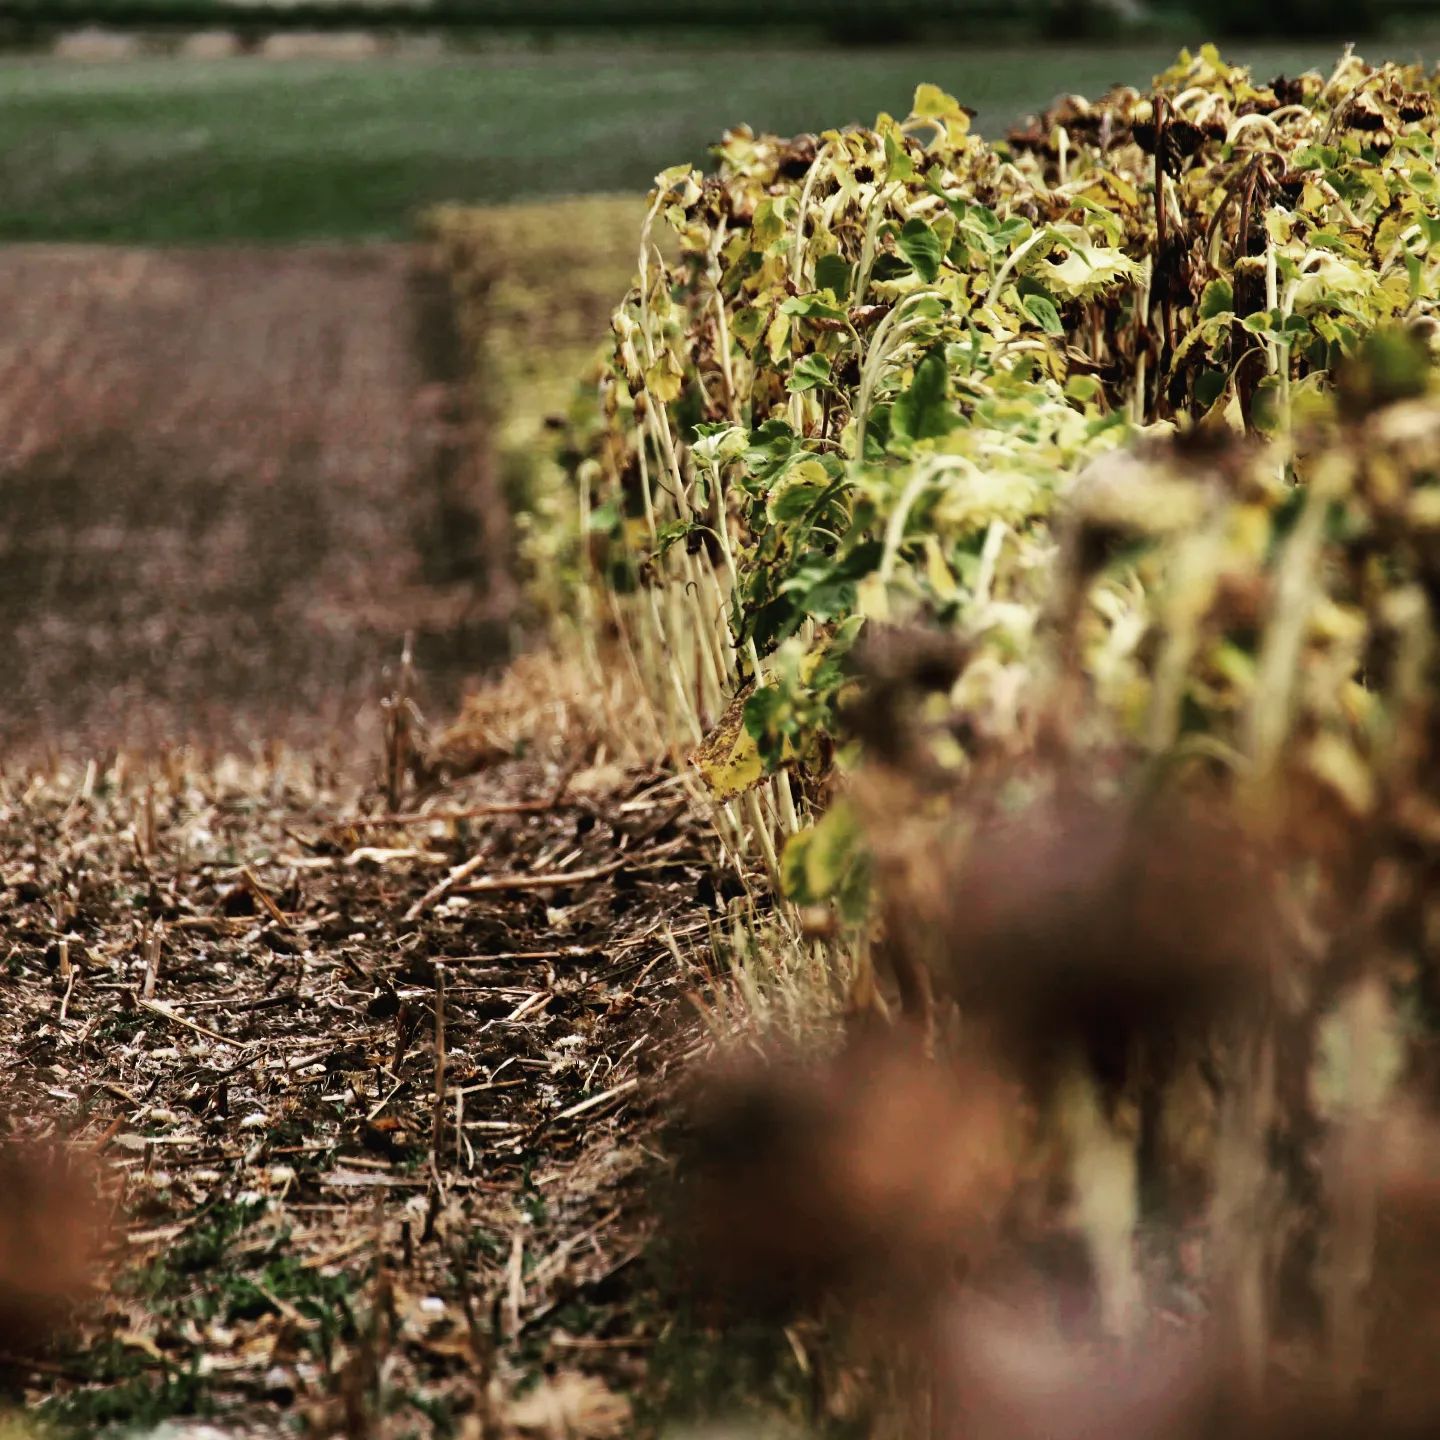 #sunflowerfield #autumniscoming 

#sunflowers #cropfield #field #countryside #countrysidelandscape #słoneczniki #poleslonecznikow #poleuprawne #krajobrazwiejski #wheredoesfoodcomefrom #skadsiebierzejedzenie